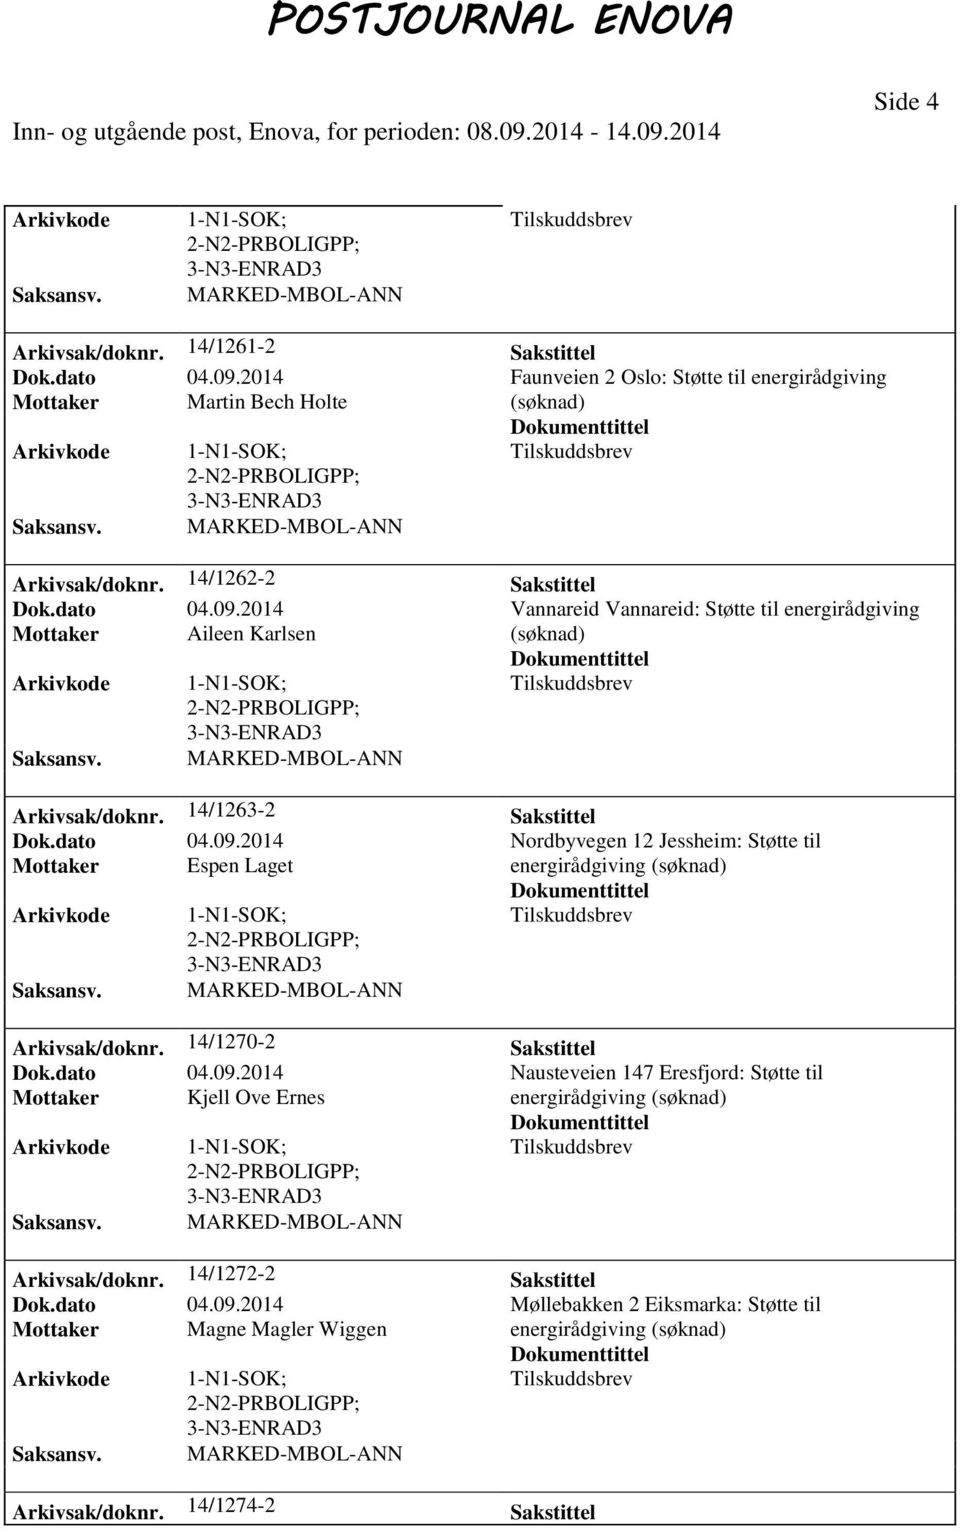 2014 Vannareid Vannareid: Støtte til energirådgiving Mottaker Aileen Karlsen Arkivsak/doknr. 14/1263-2 Sakstittel Dok.dato 04.09.